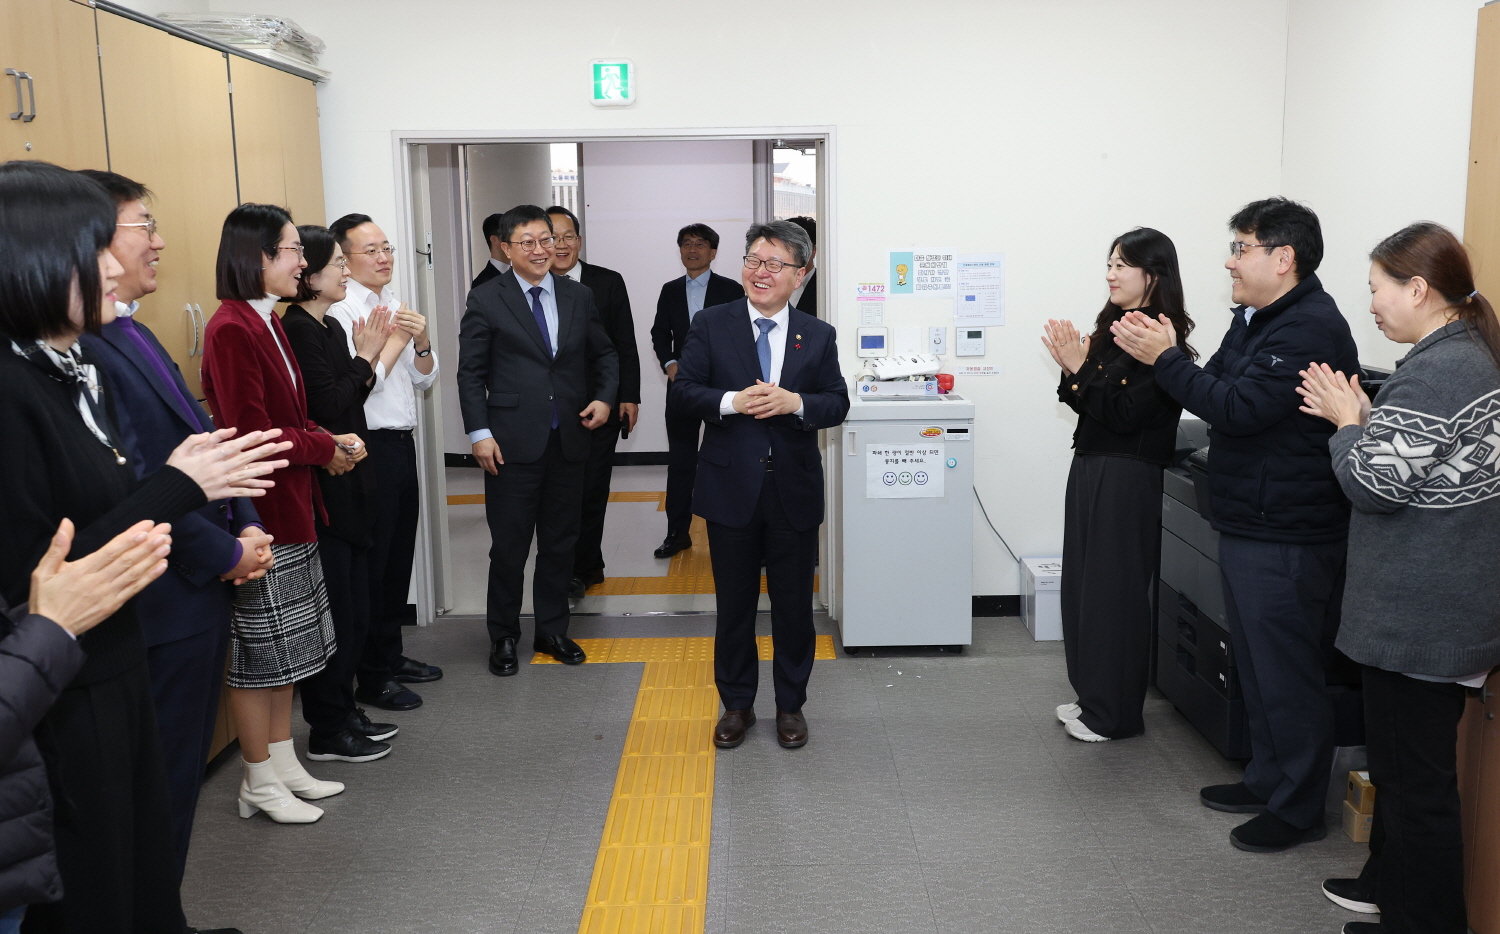 오석환 교육부 차관은 8일 정부세종청사에서 열린 제64대 교육부 차관 취임식에 참석했다.